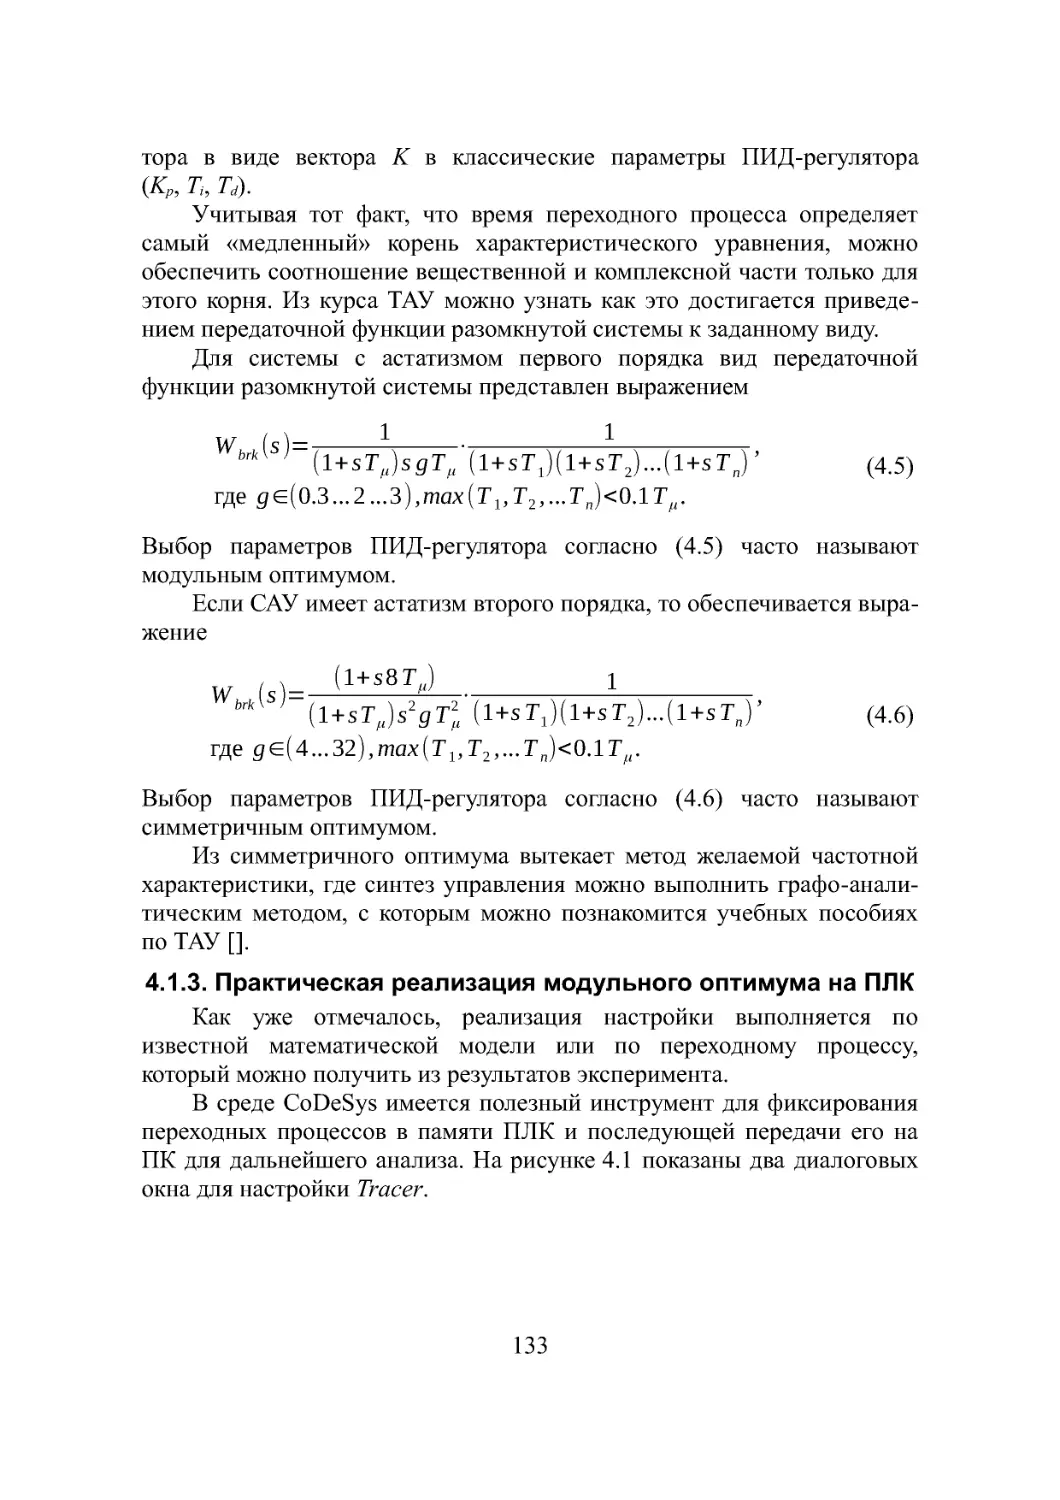 4.1.3. Практическая реализация модульного оптимума на ПЛК